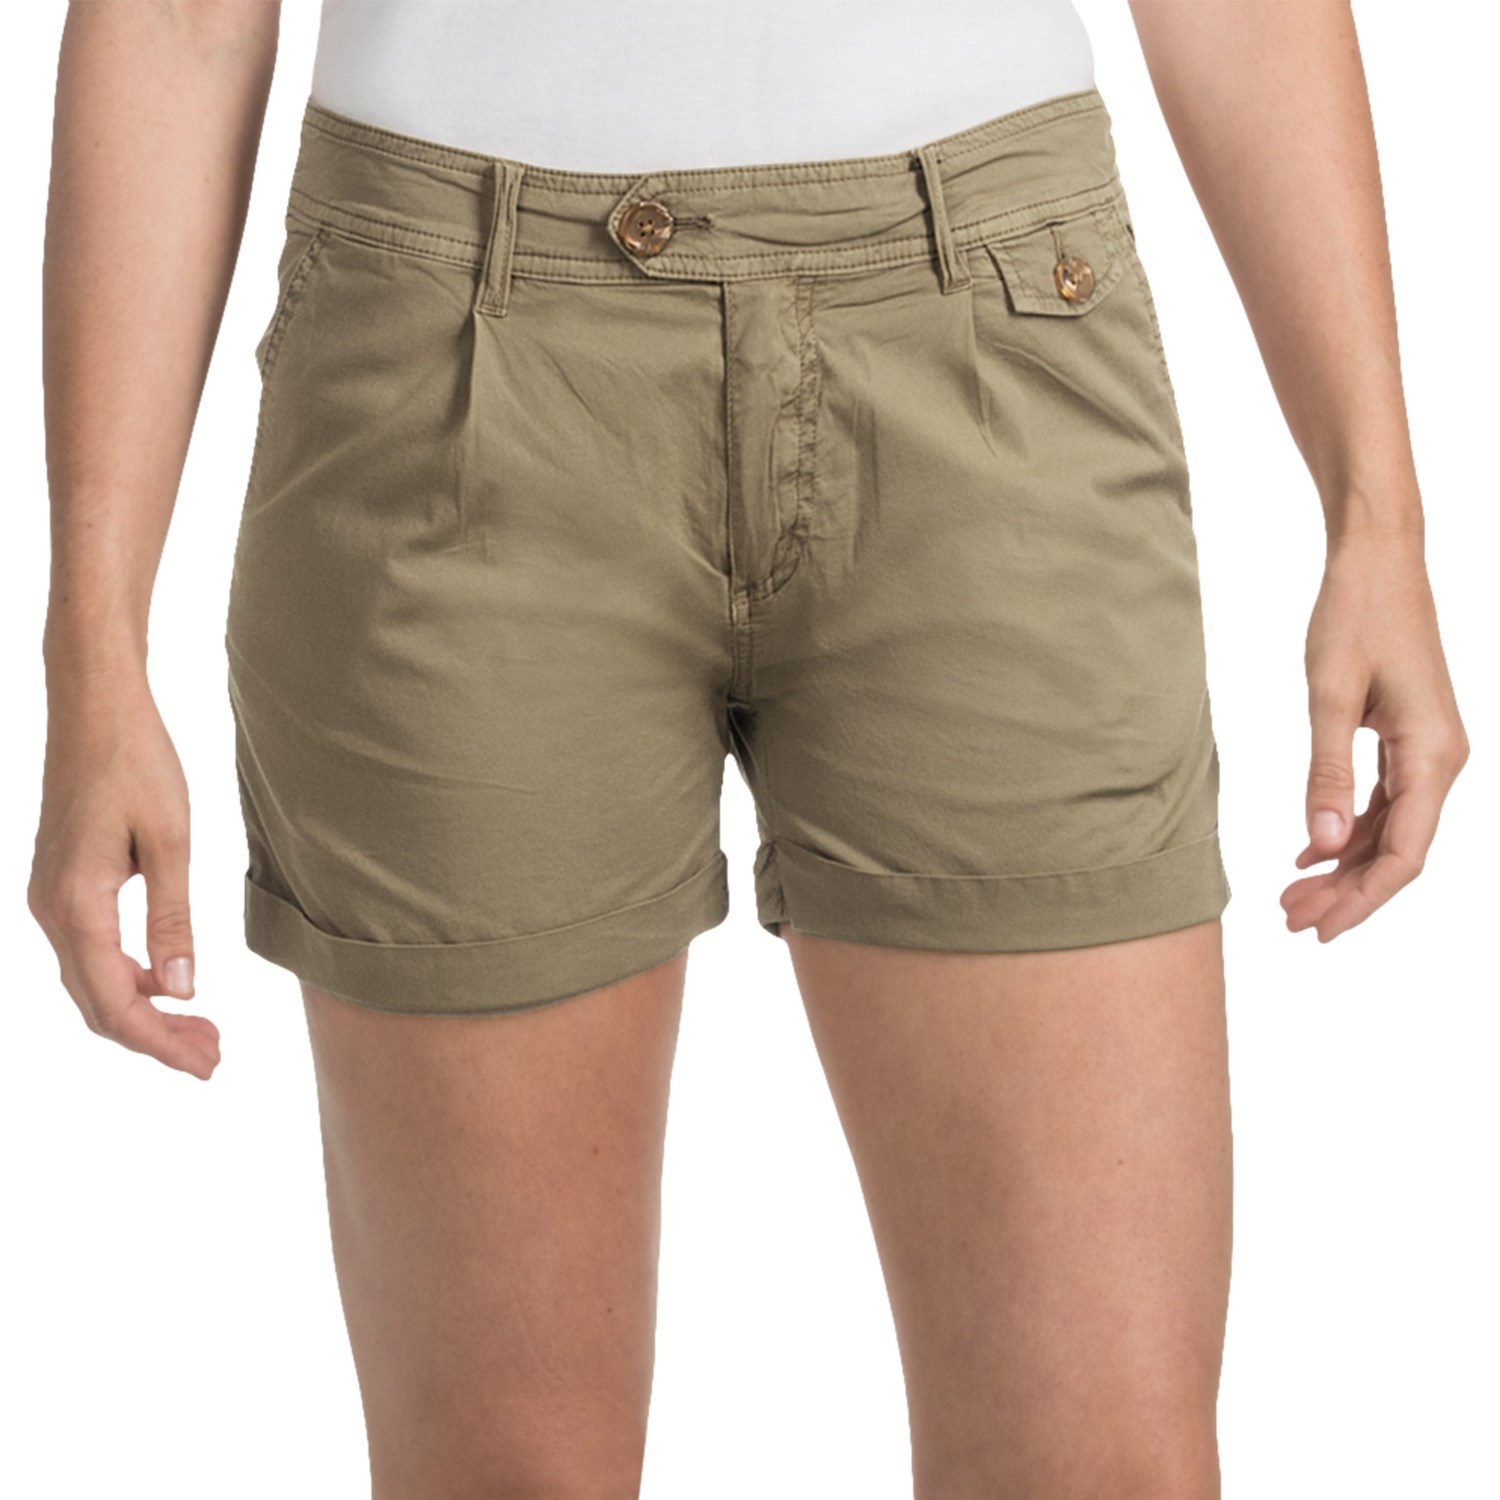 Gramicci Sky Safari Poplin Shorts (For Women) - Save 54%